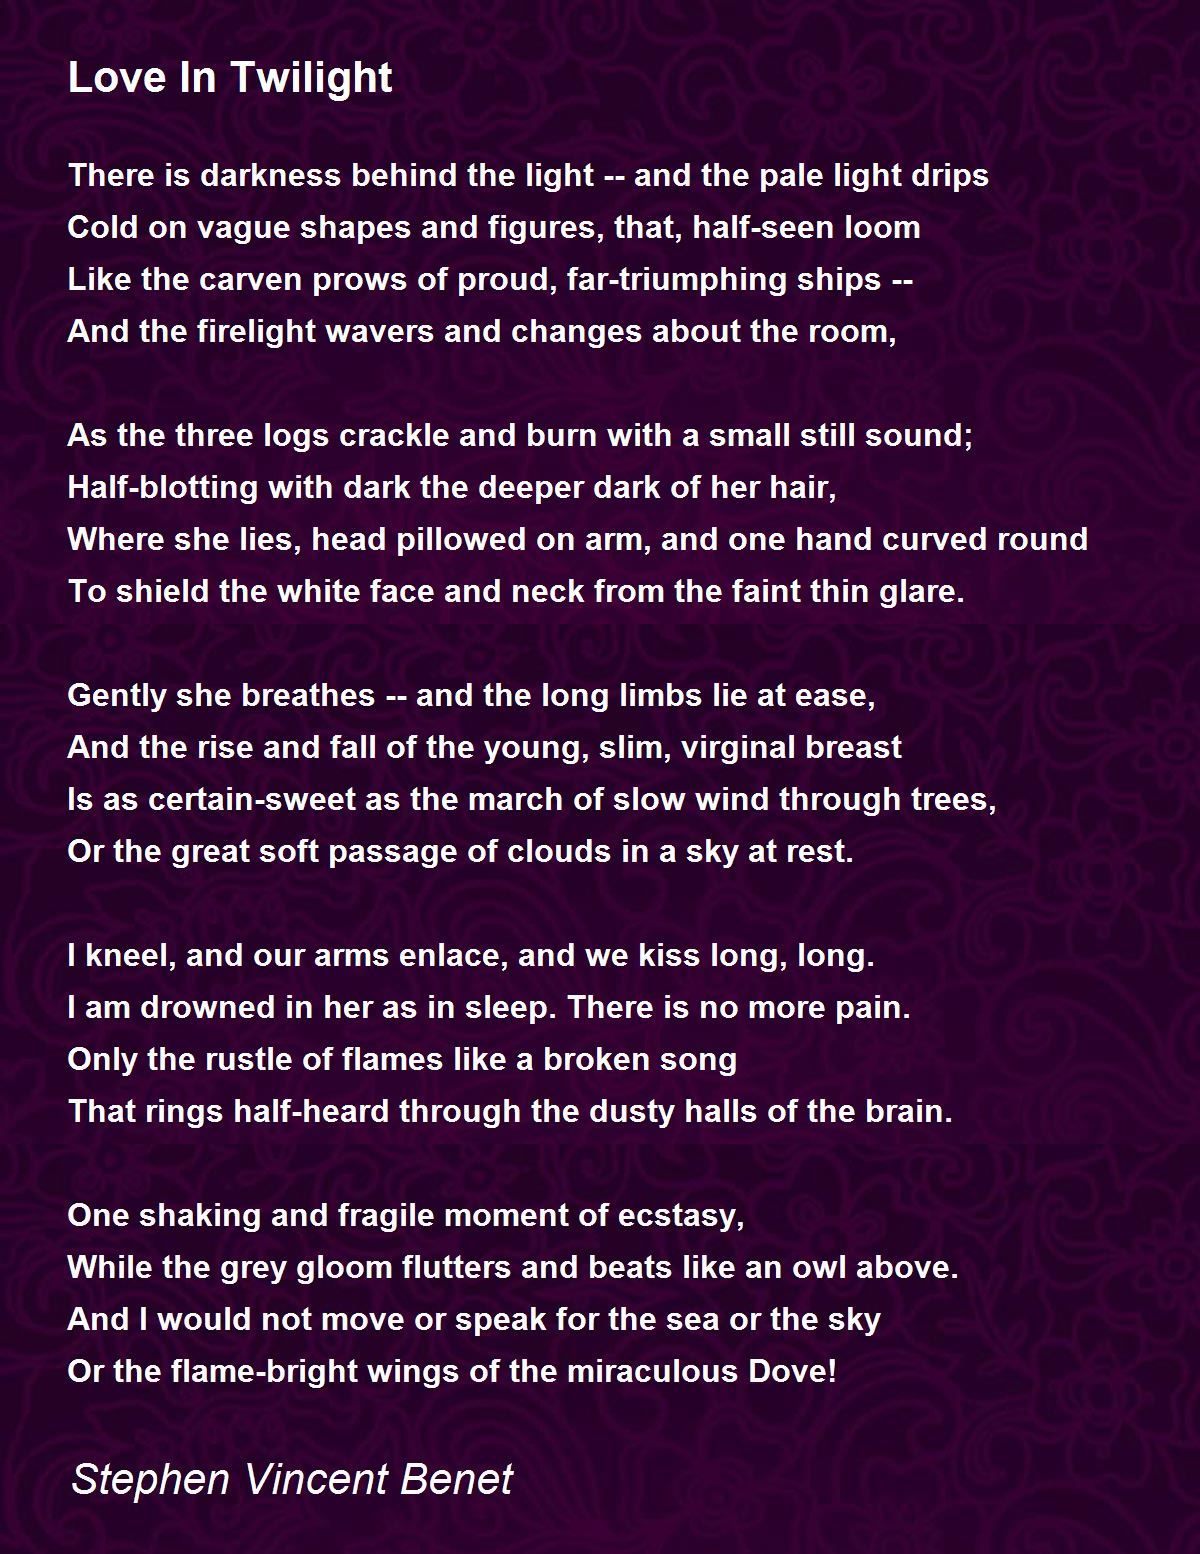 Love In Twilight Poem by Stephen Vincent Benet - Poem Hunter